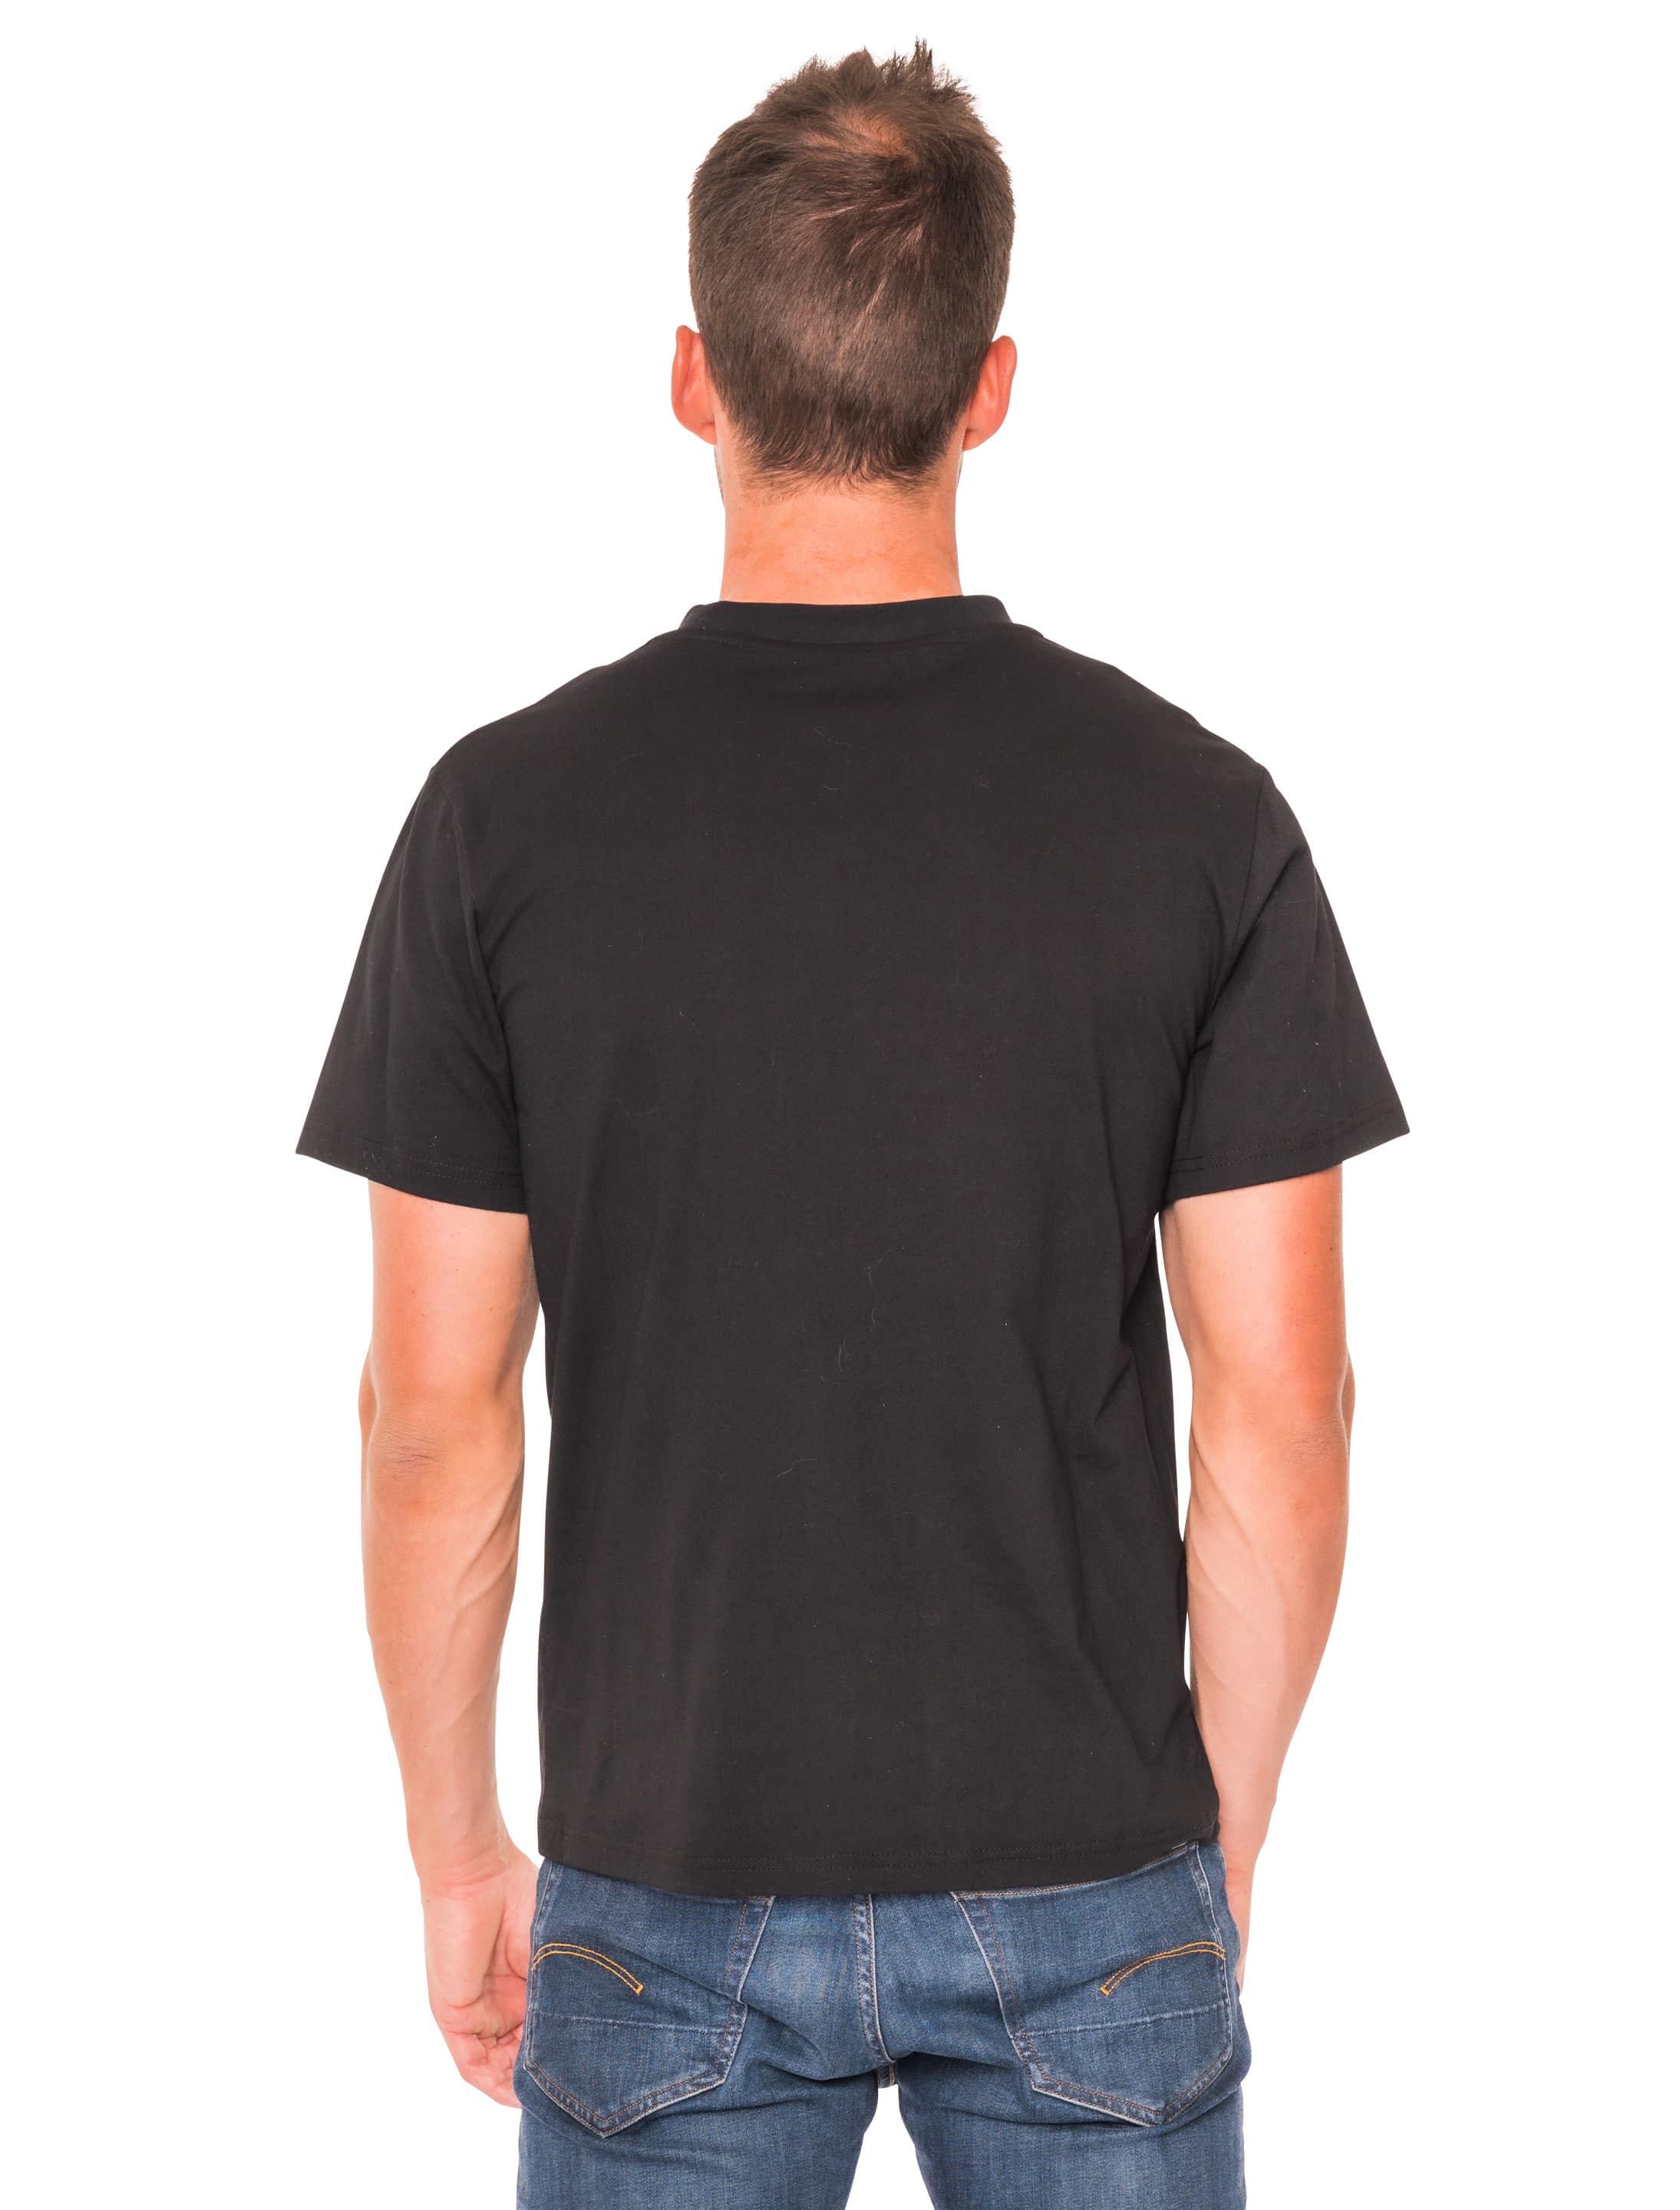 T-Shirt 90er Jahre Herren schwarz XL